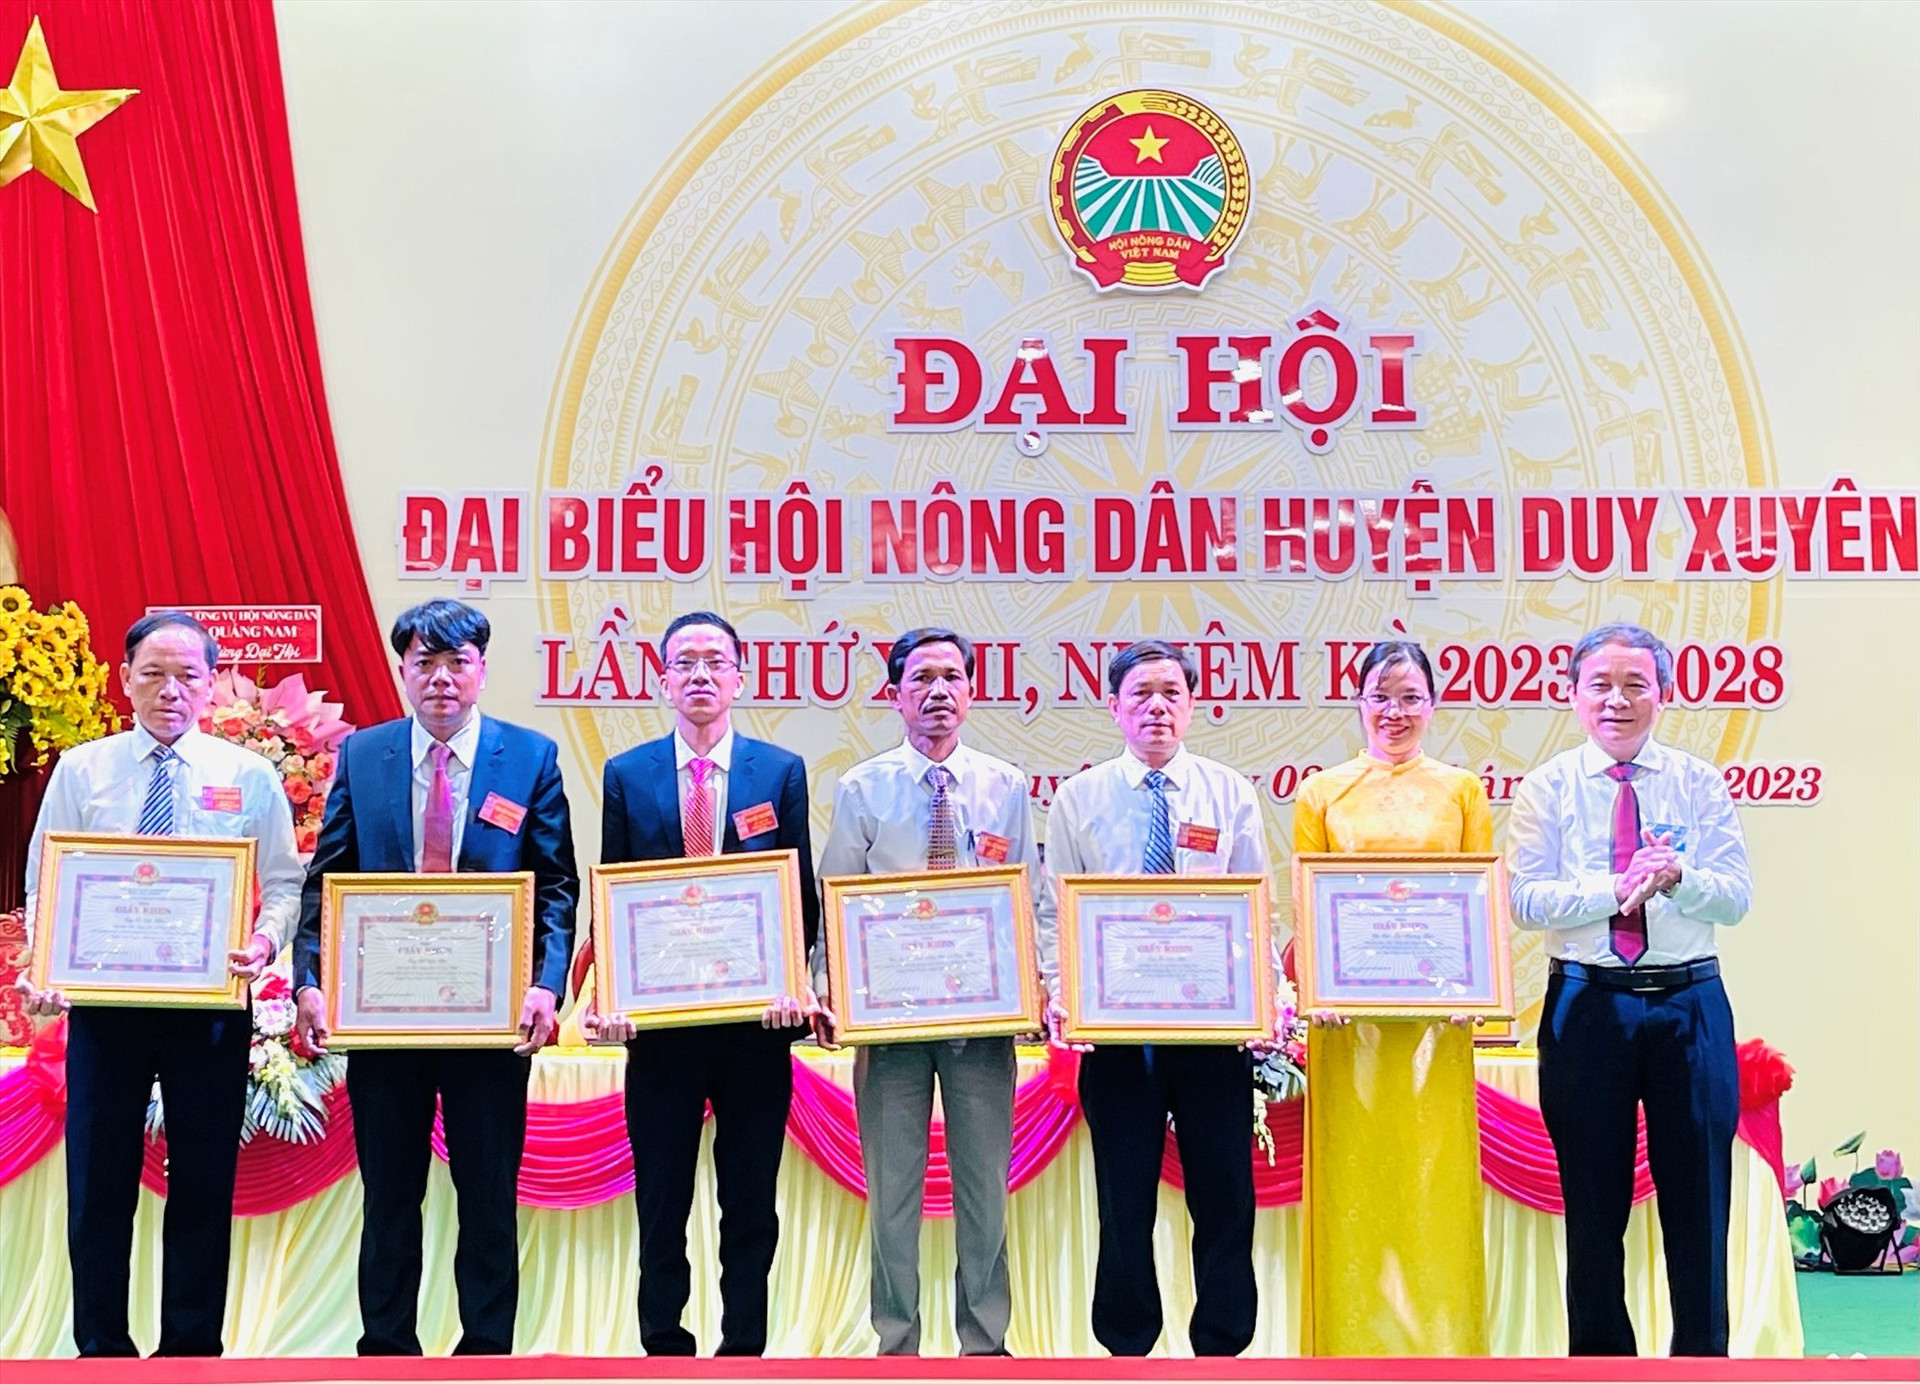 Ông Phan Xuân Cảnh - Chủ tịch UBND huyện Duy Xuyên trao giấy khen cho các cá nhân có thành tích xuất sắc trong phong trào nông dân nhiệm kỳ qua. Ảnh: N.T